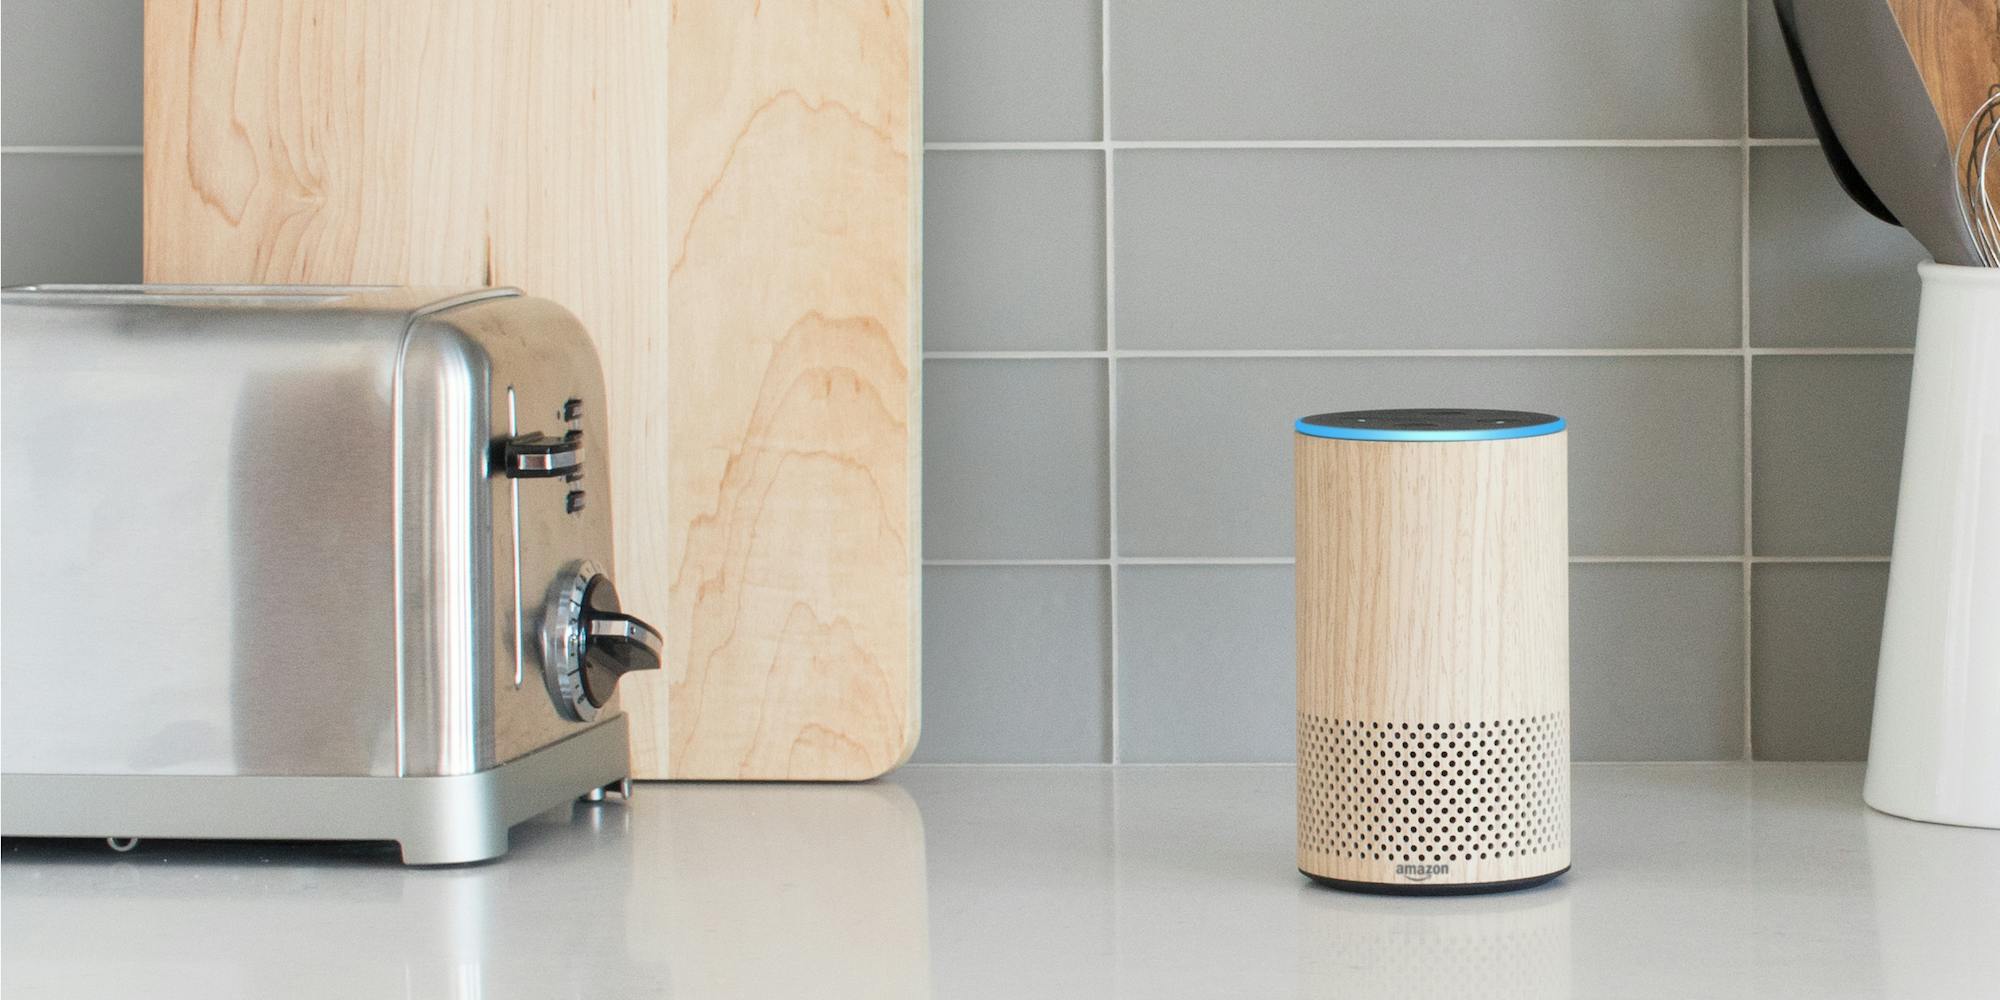 How to use Alexa : Amazon Echo in kitchen next to a toaster